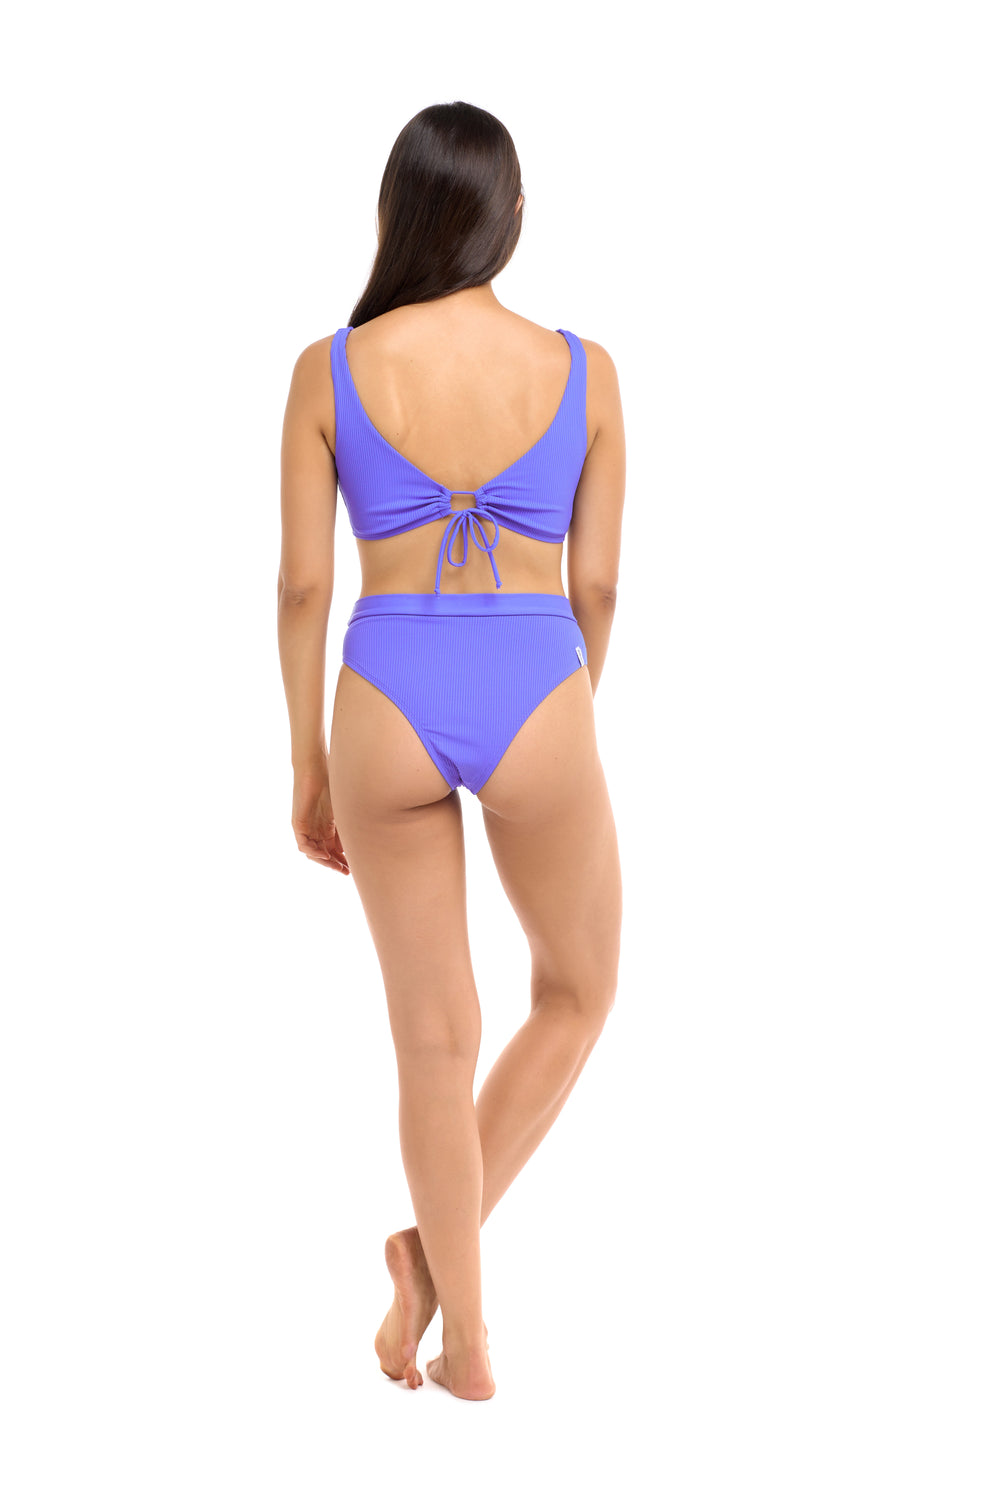 Ibiza Lolah Scoop Bikini Top - Clearwater - Body Glove